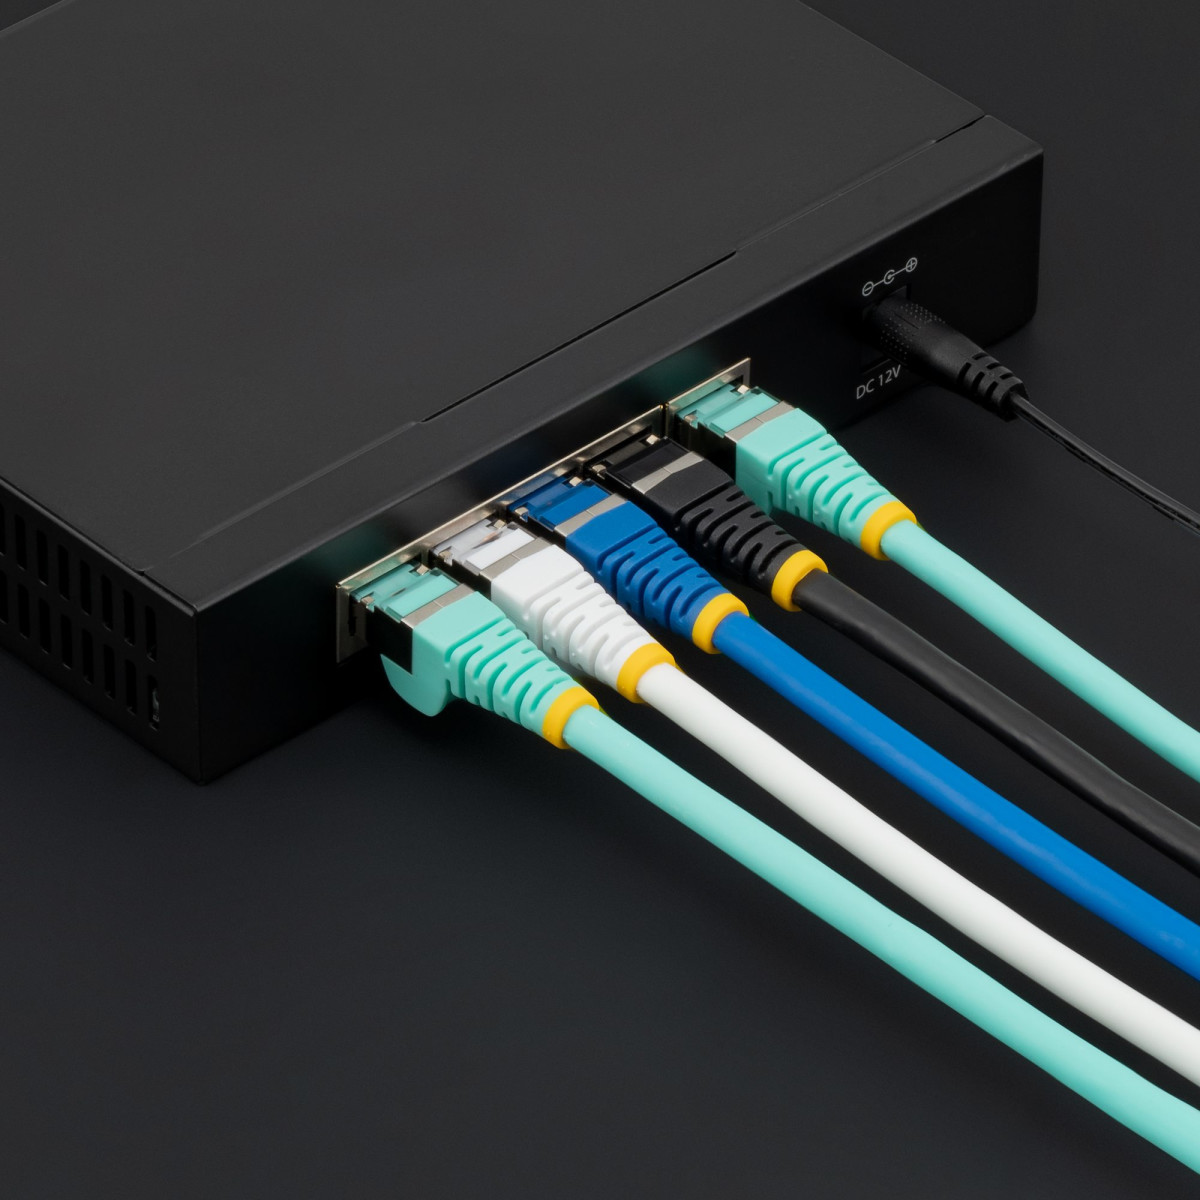 7.5m LSZH CAT6a Ethernet Cable - Blue